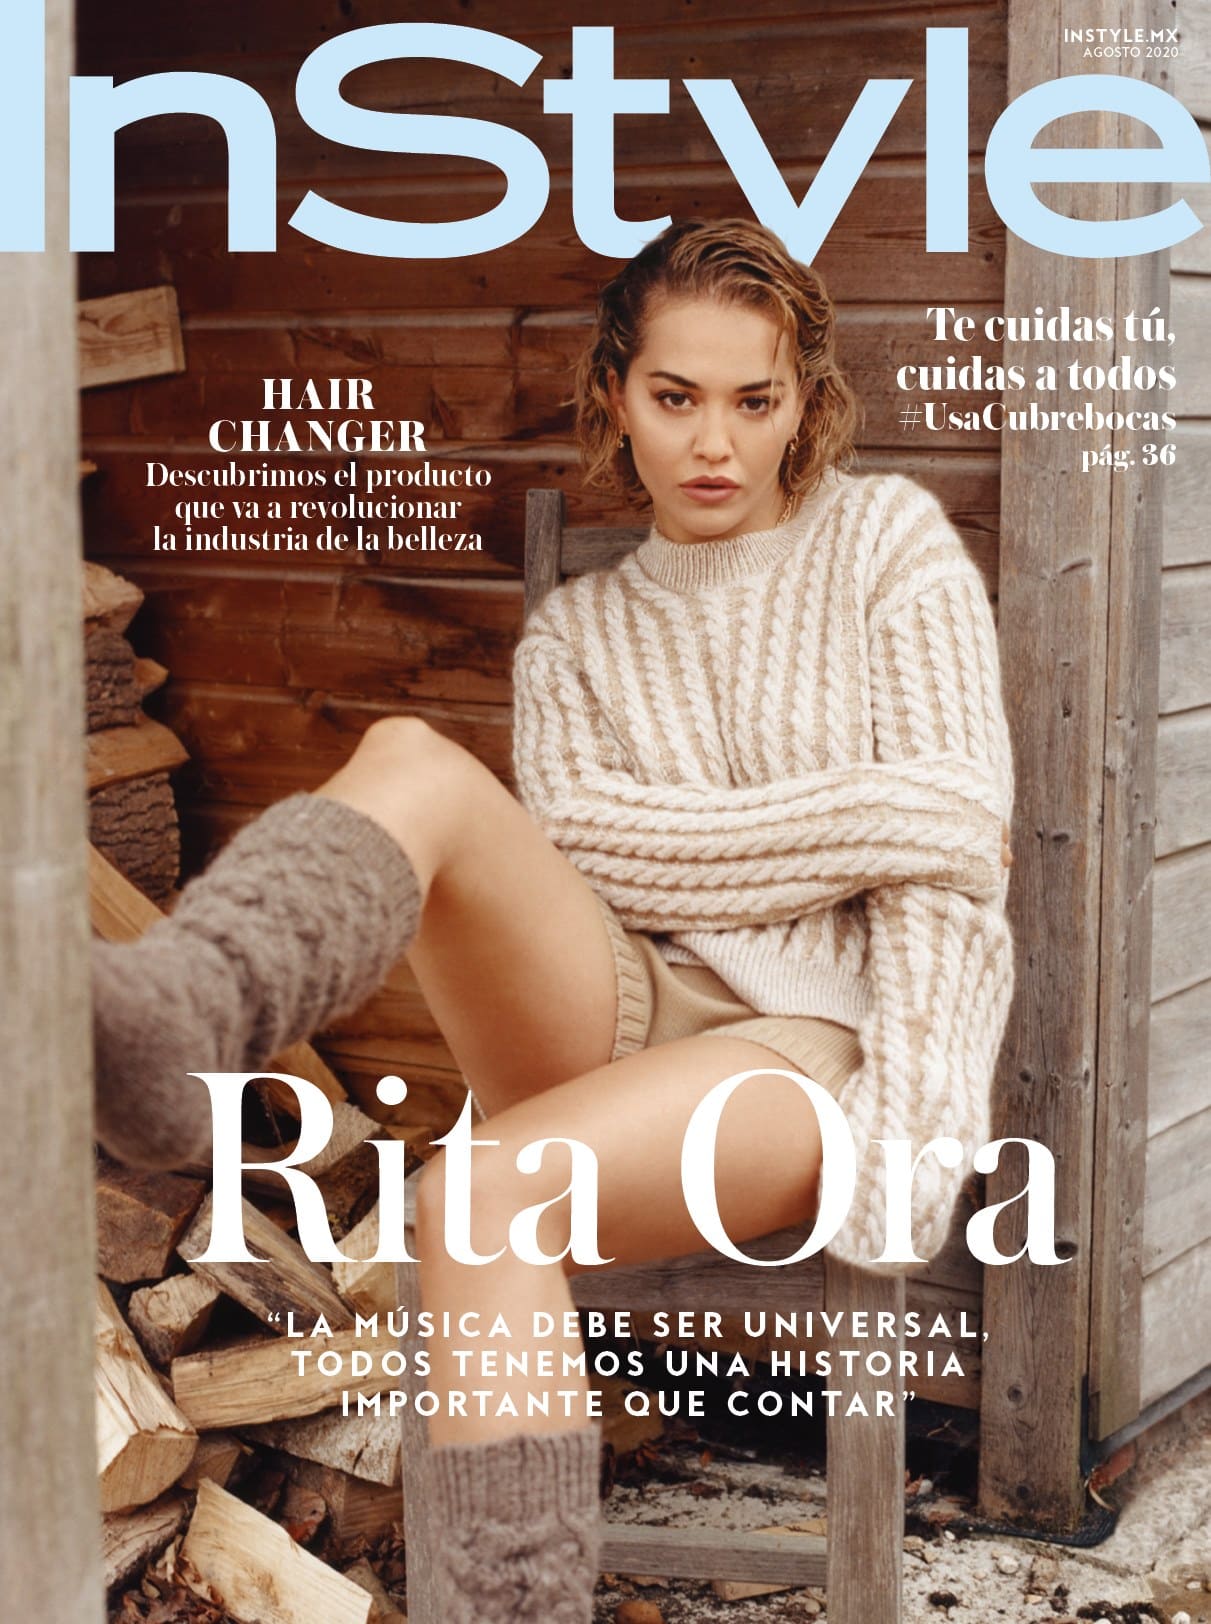 Fotos n°11 : Vida en la granja de Rita Ora!